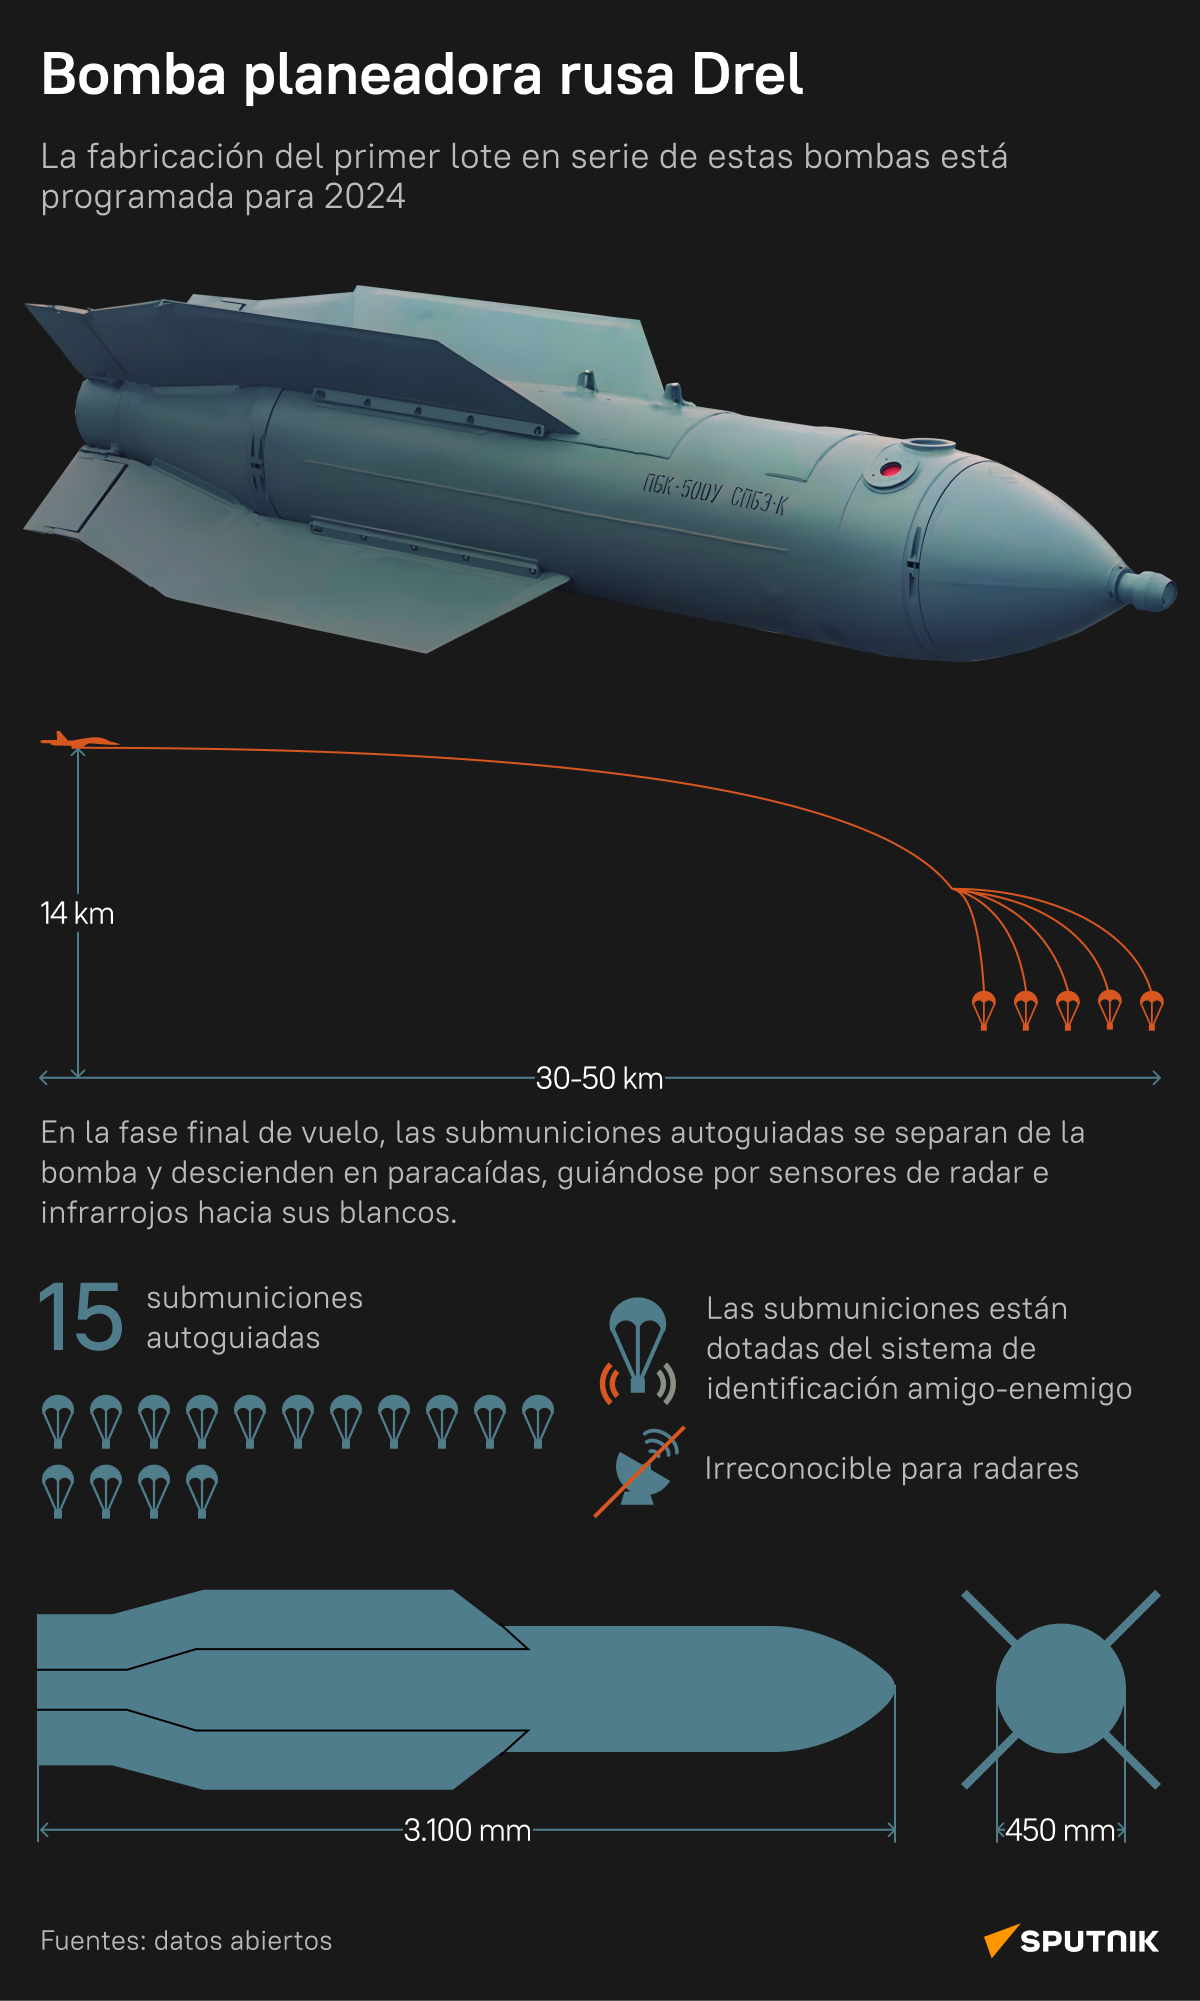 La 'perforadora rusa': la bomba planeadora Drel, al detalle - Sputnik Mundo